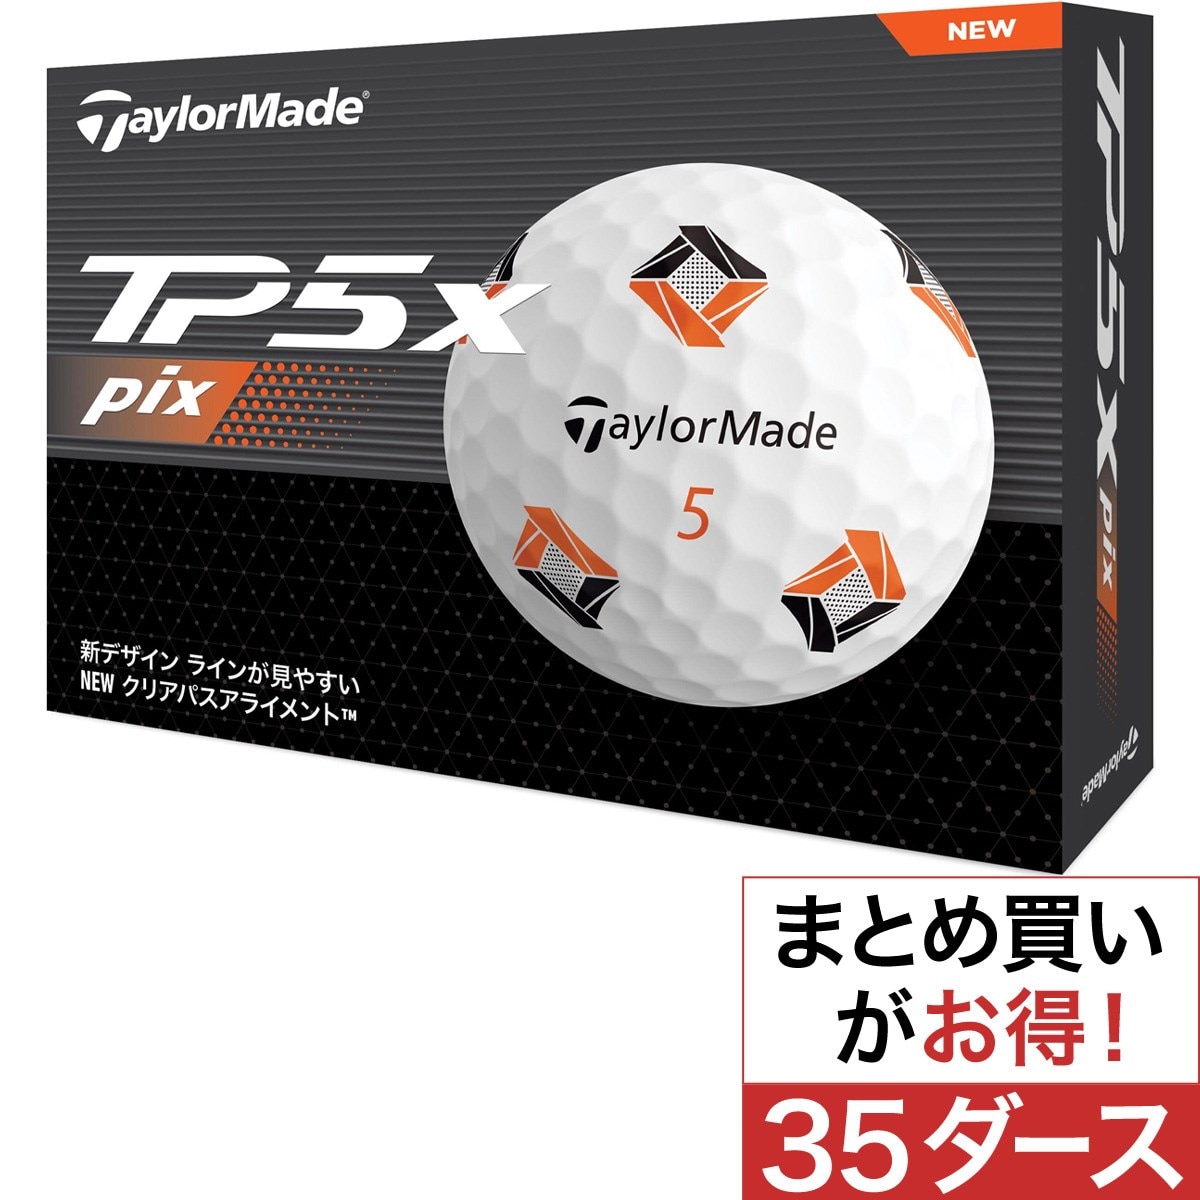 TP5x pix ボール 35ダースセット(ゴルフボール)